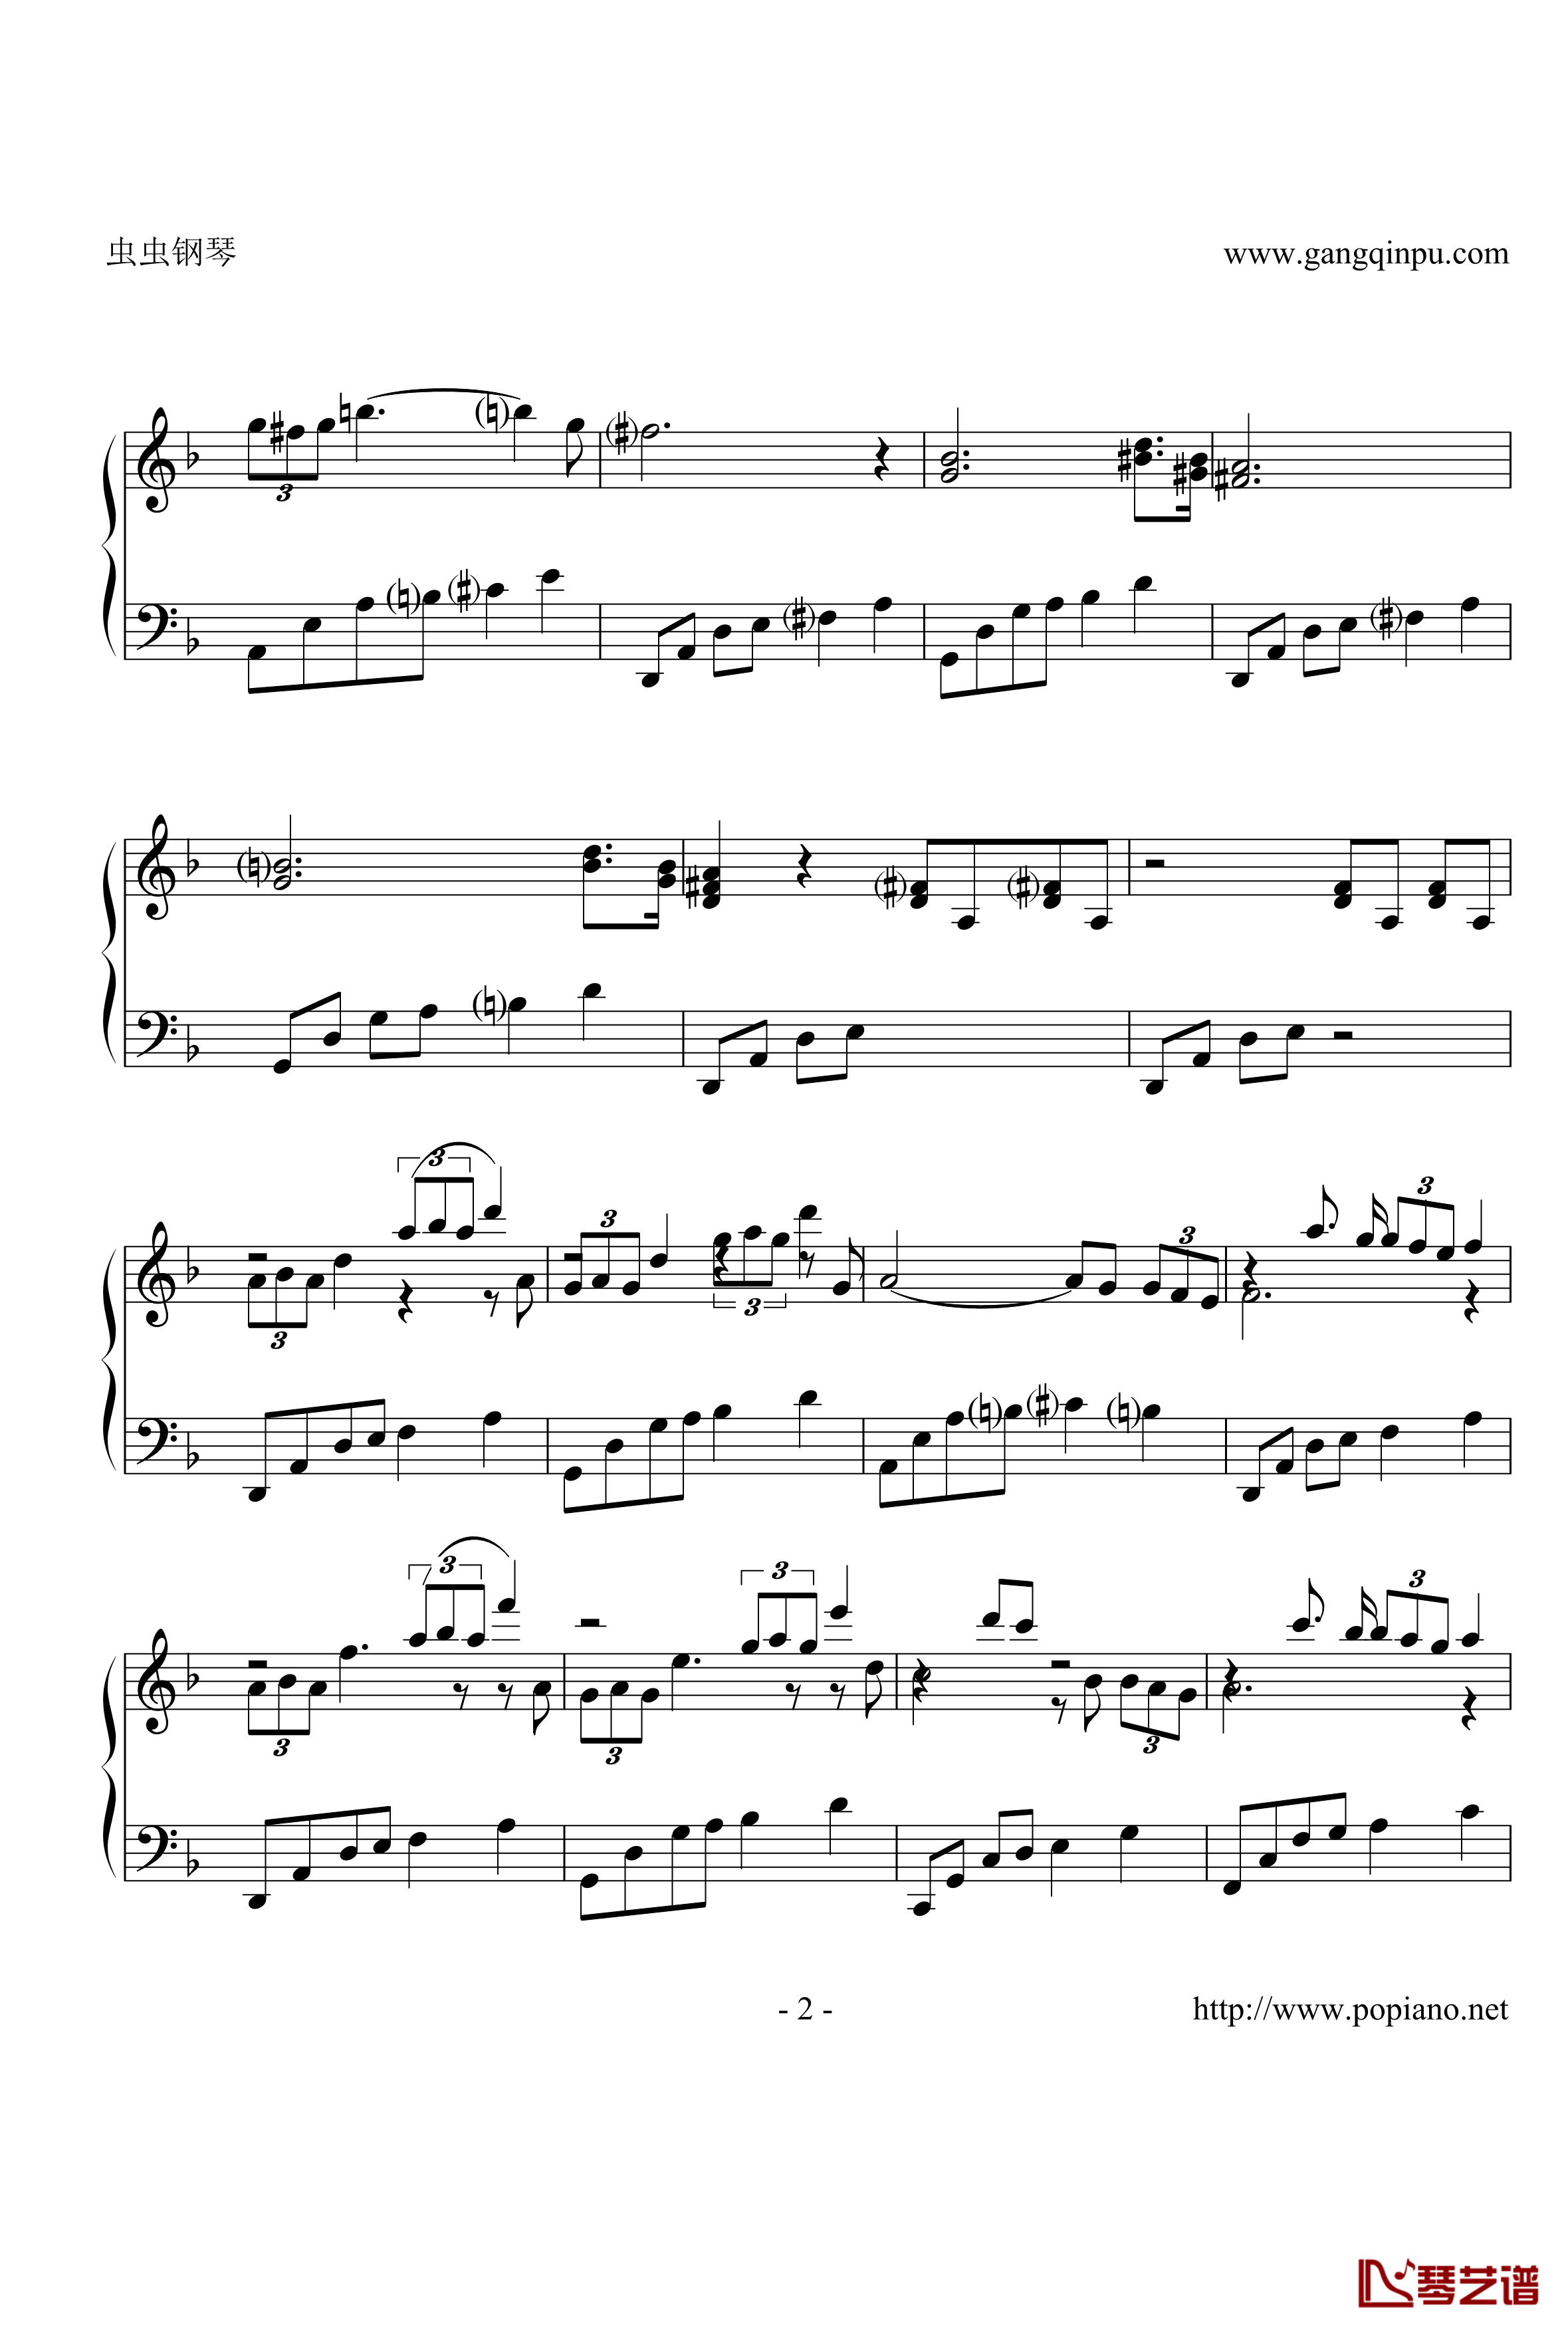 小夜曲抒情版钢琴谱-舒伯特-2